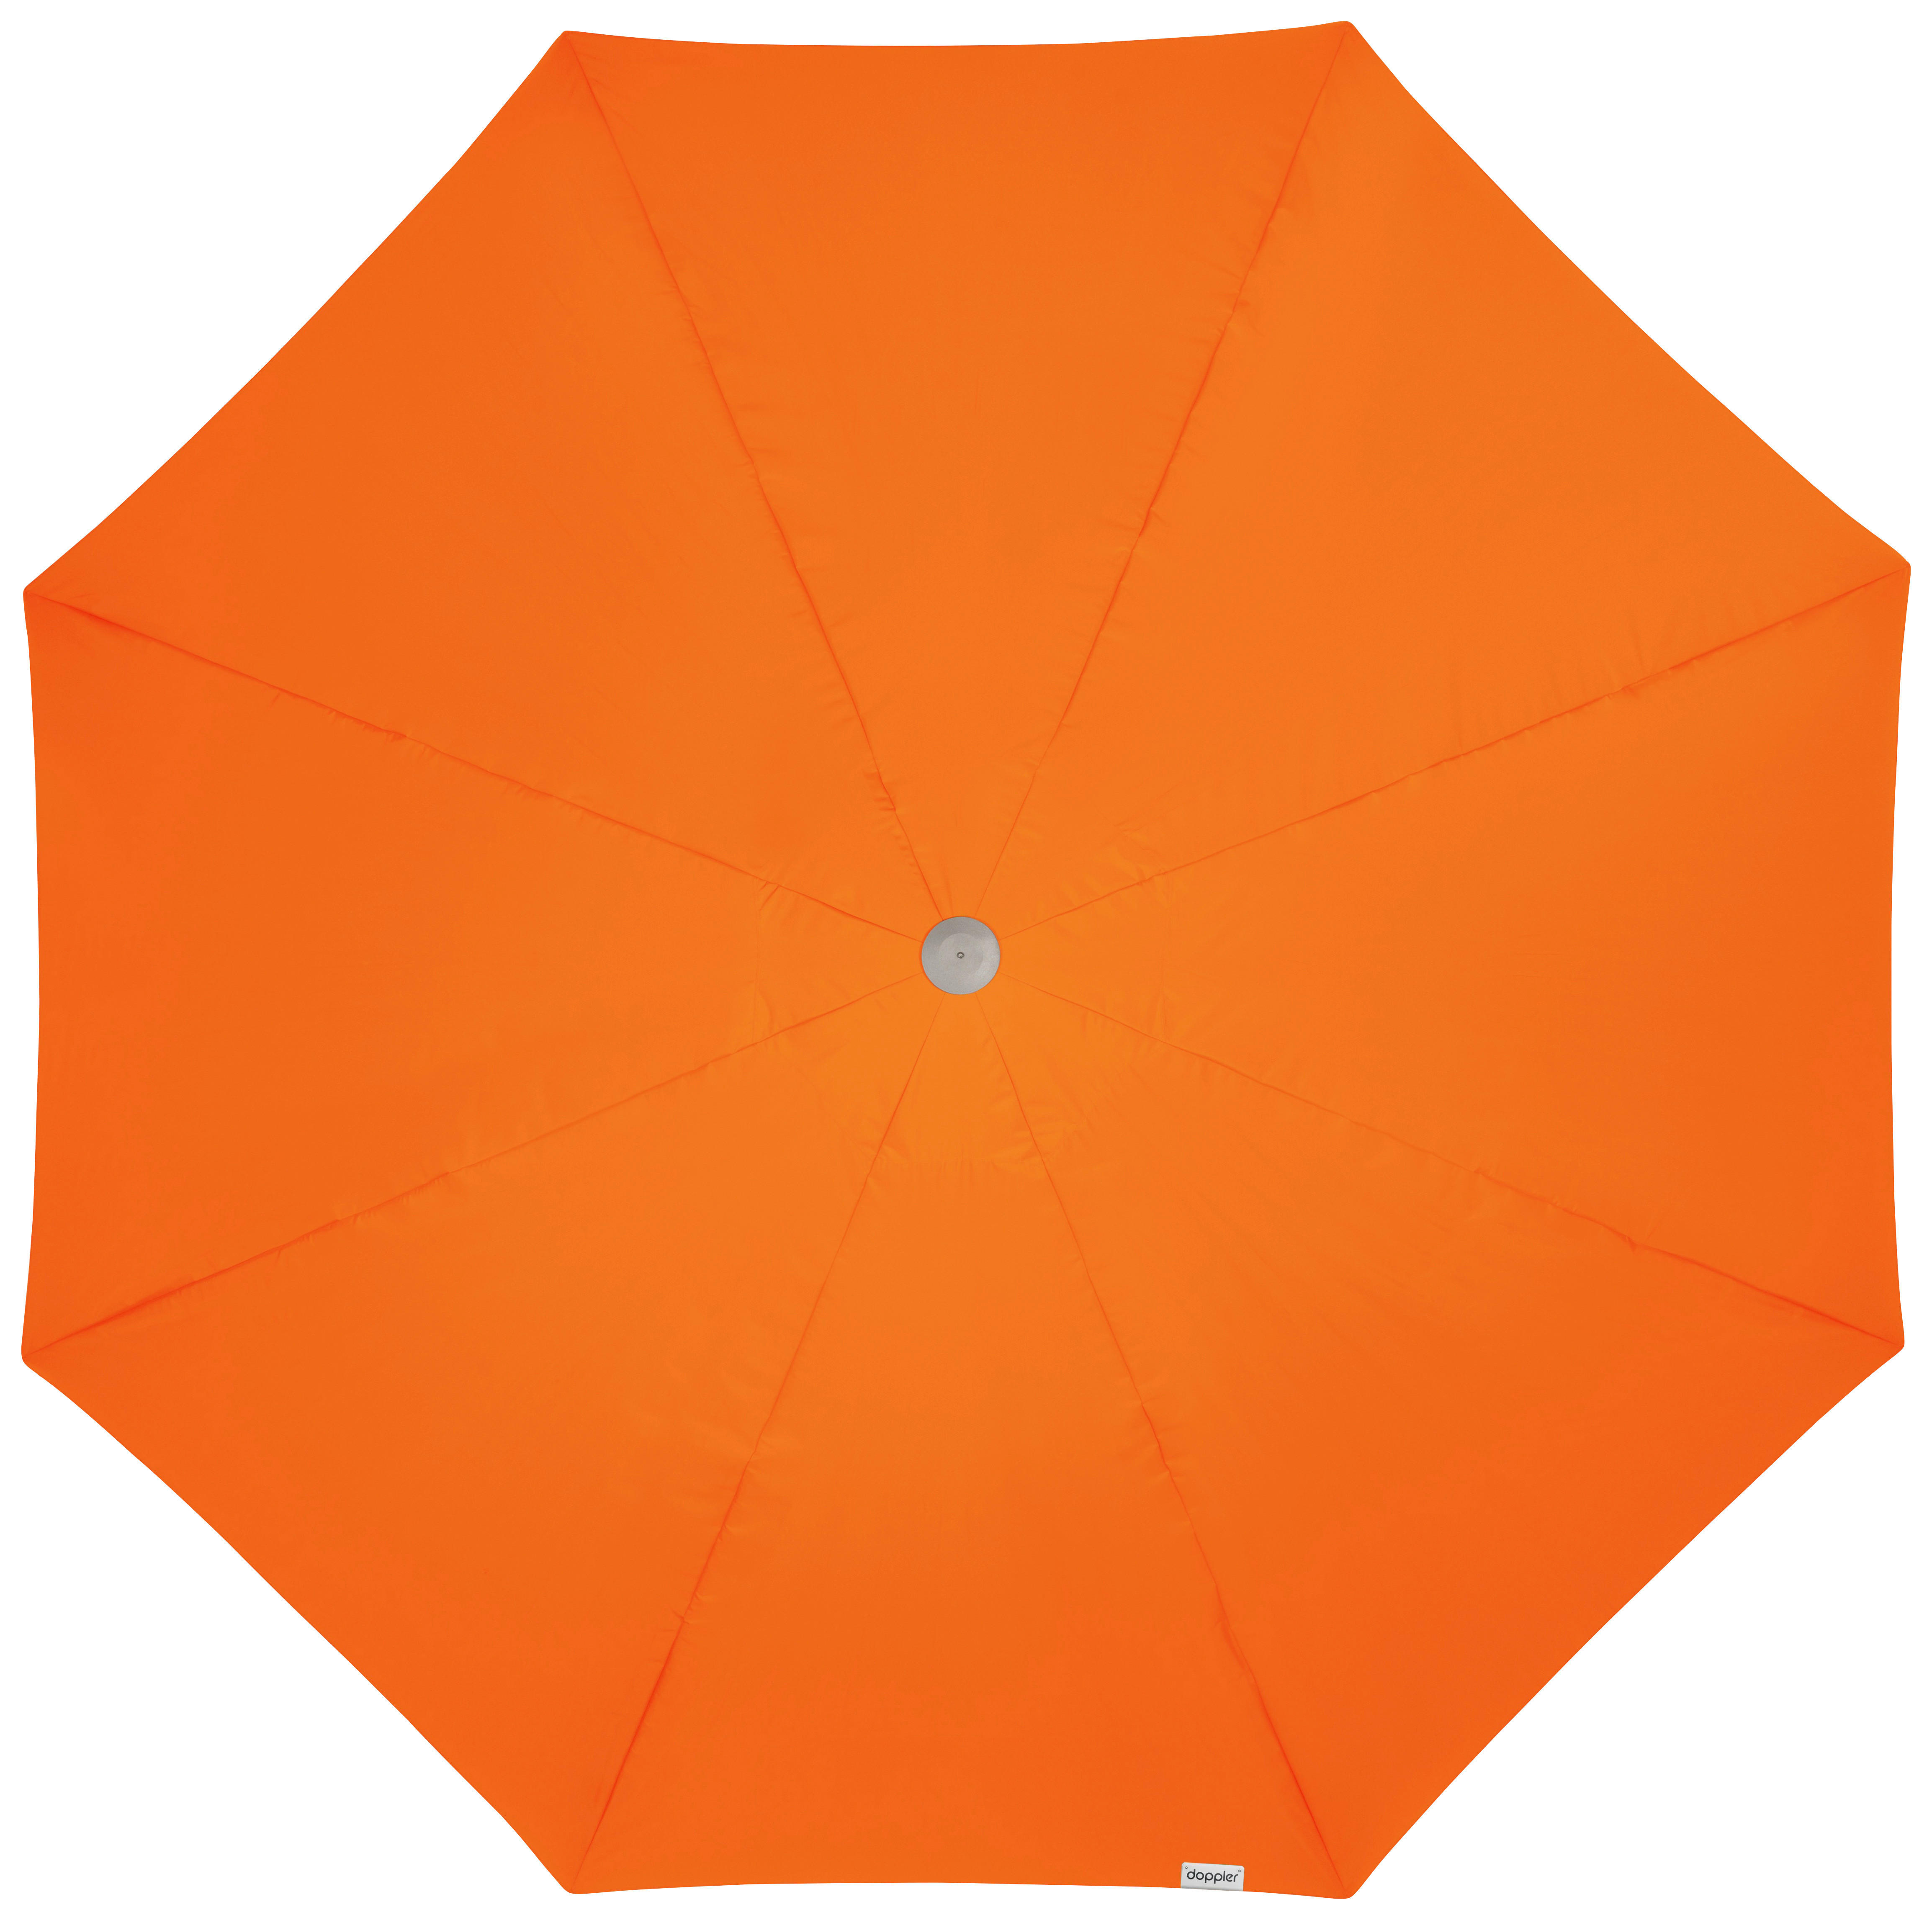 SONNENSCHIRM 500 cm Orange  - Alufarben/Orange, Basics, Textil/Metall (500/500cm) - Doppler